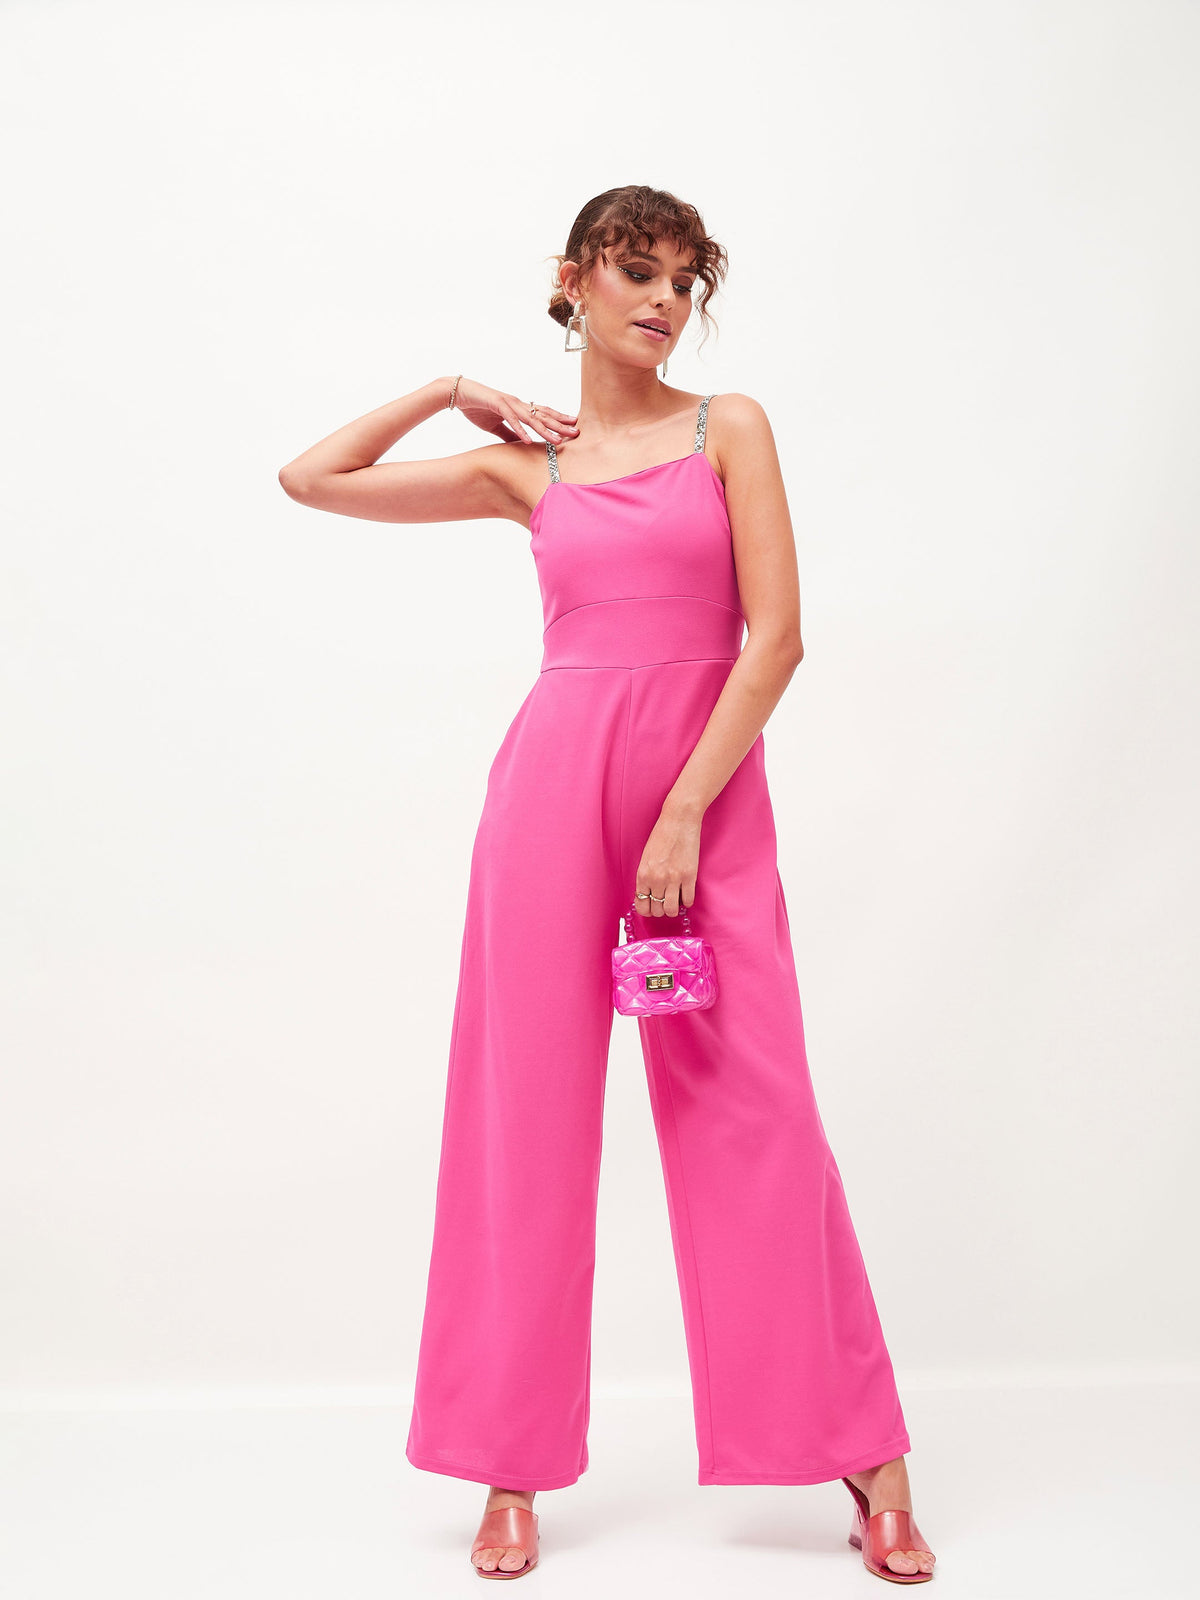 Women Pink Contrast Waistband Cargo Pants